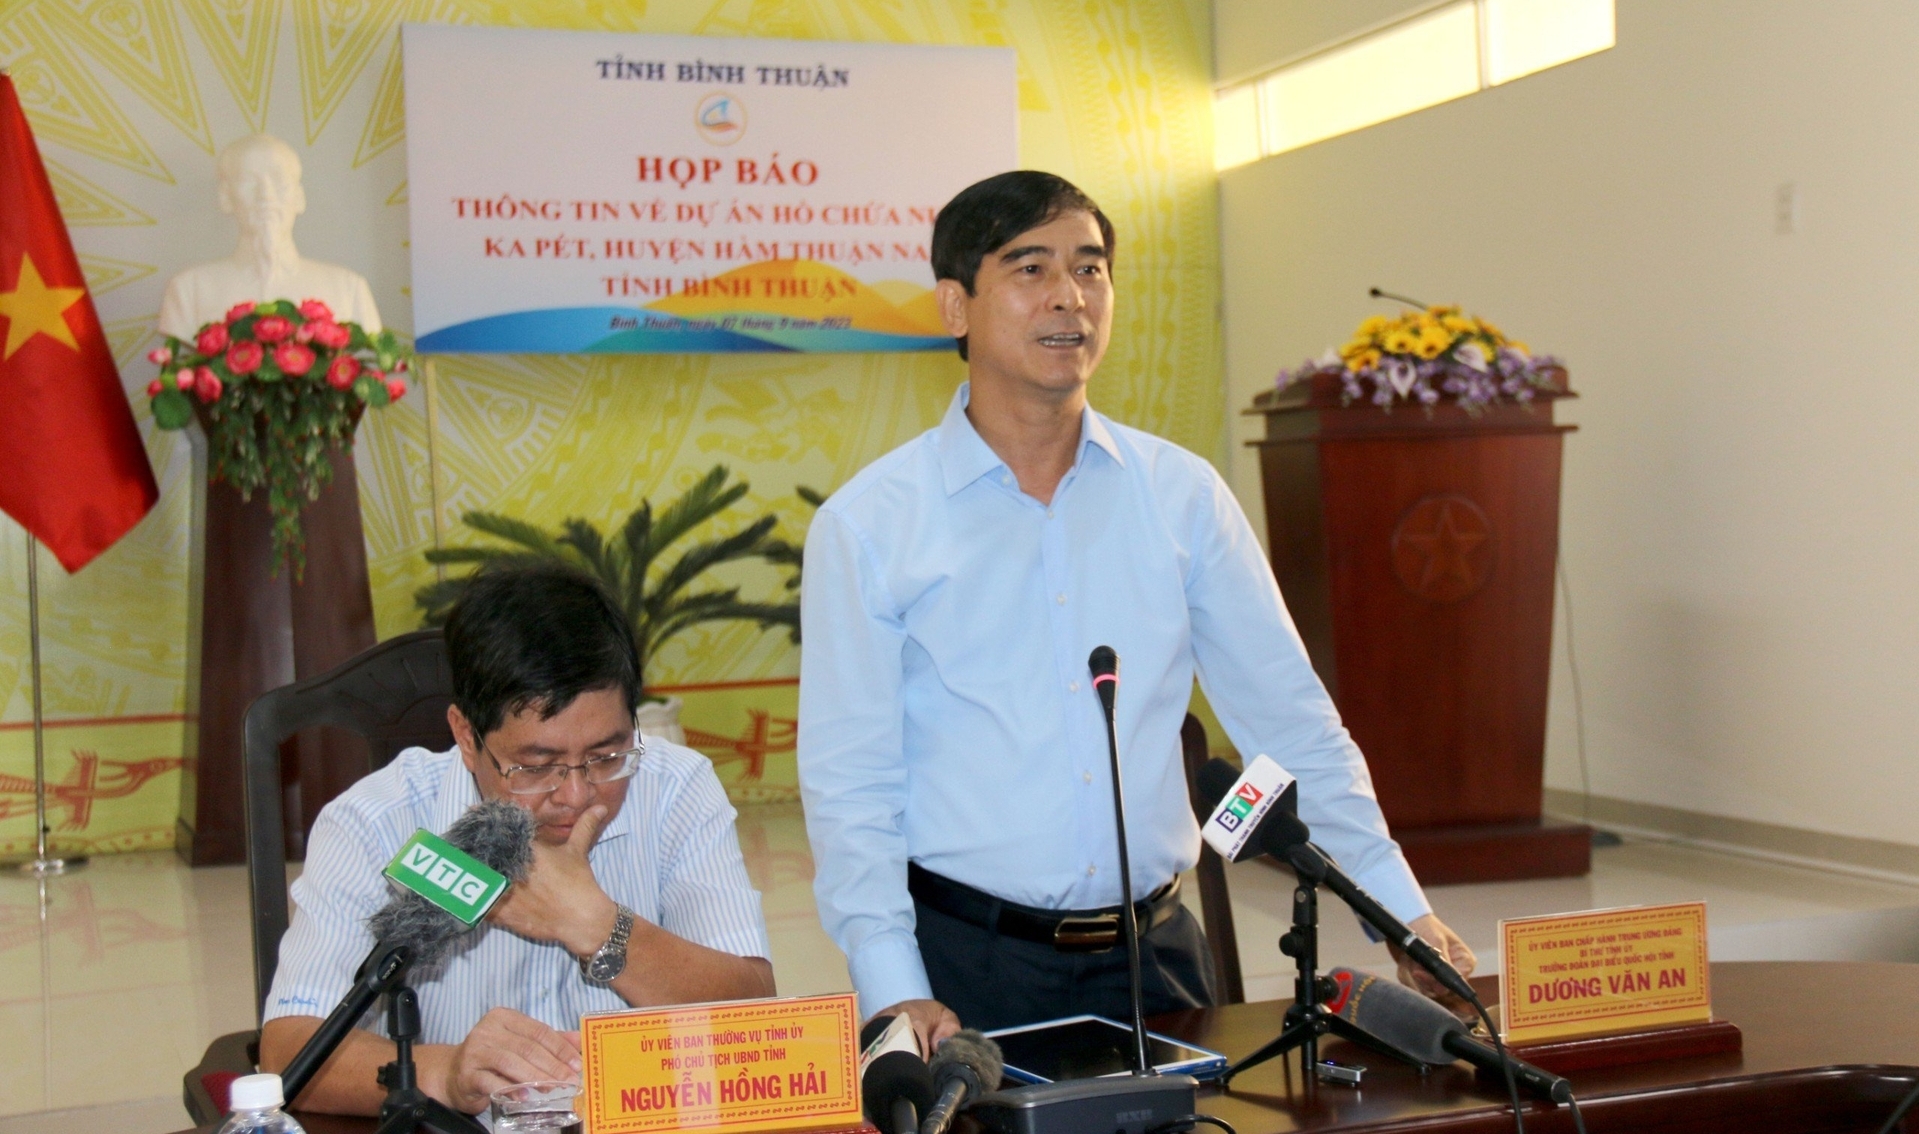 Ông Dương Văn An, Bí thư Tỉnh ủy Bình Thuận cho biết, hồ chứa nước Ka Pét được xây dựng sẽ góp phần đảm bảo an ninh nguồn nước, nâng cao đời sống người dân. Ảnh: NT.